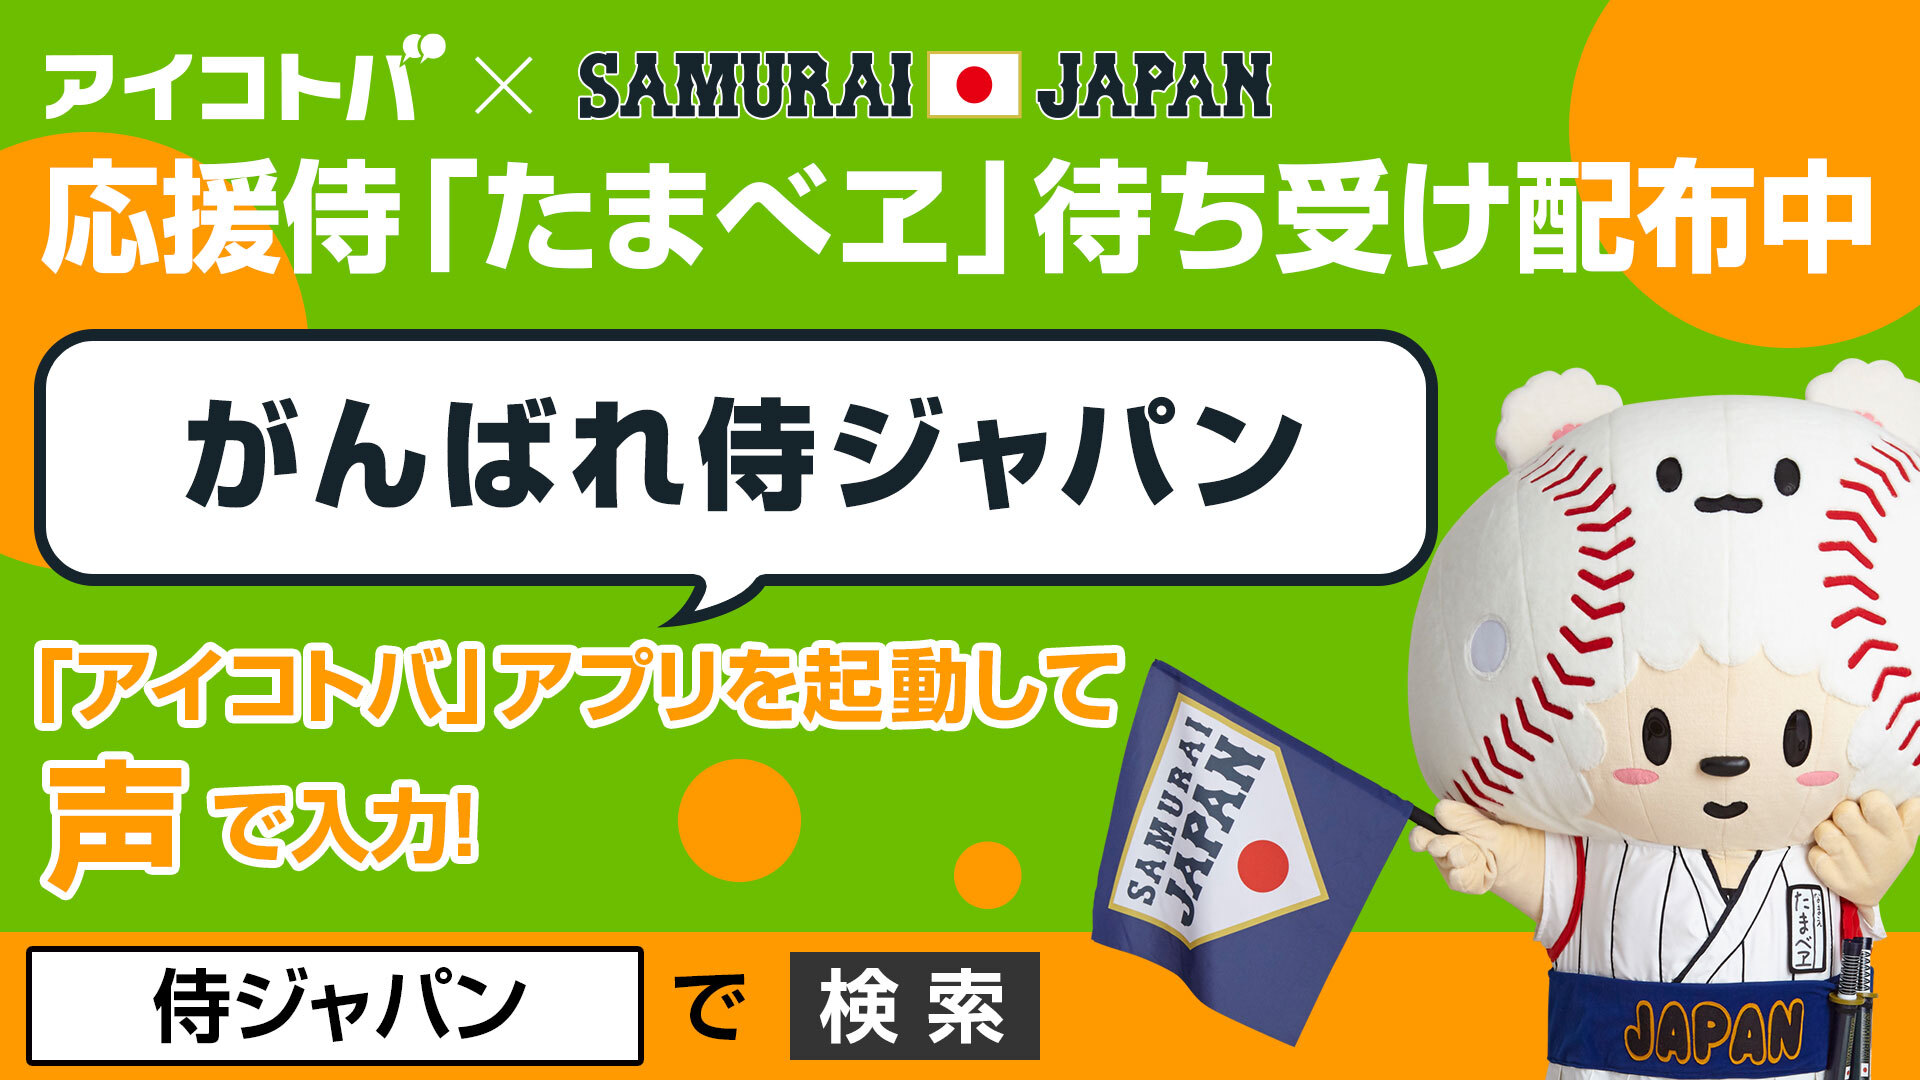 侍ジャパン 強化試合で アイコトバ をスマホに向かってしゃべるだけ 音声認識アプリ アイコトバ で特典がもらえるキャンペーンを3月より実施 株式会社アイコトバのプレスリリース